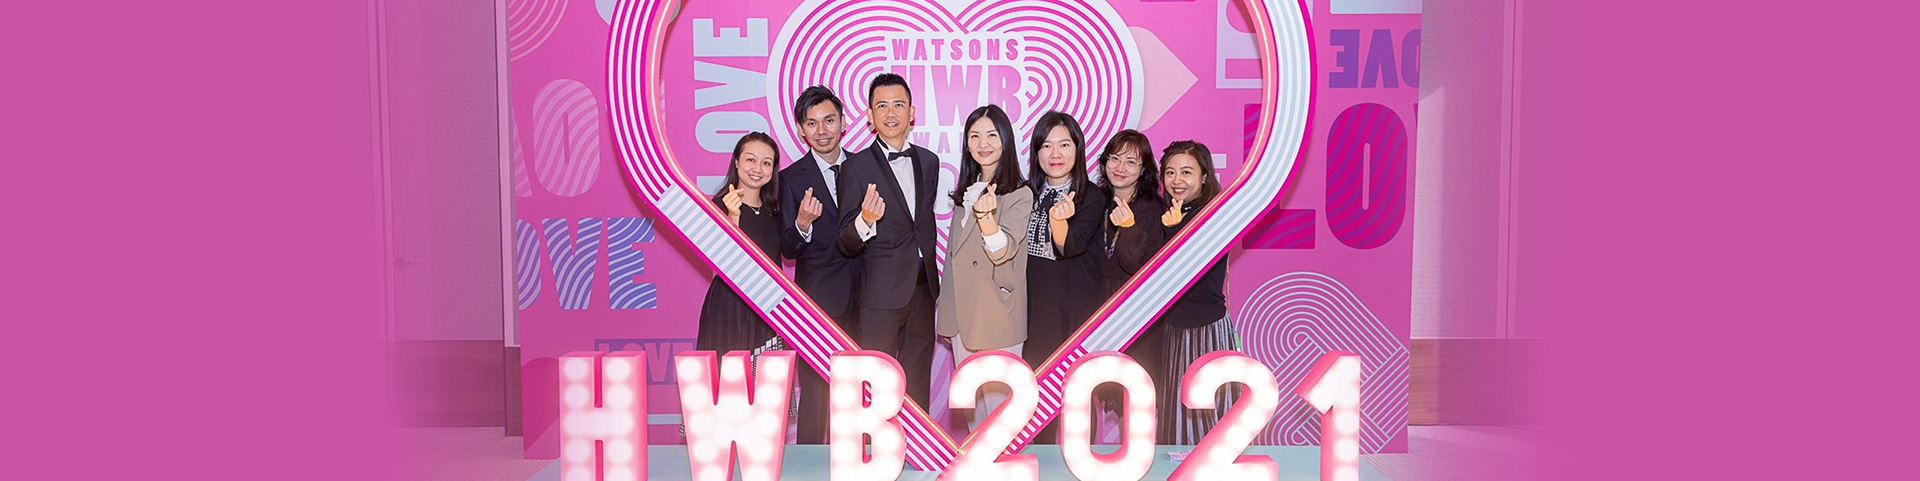 Watsons Hong Kong HWB Awards